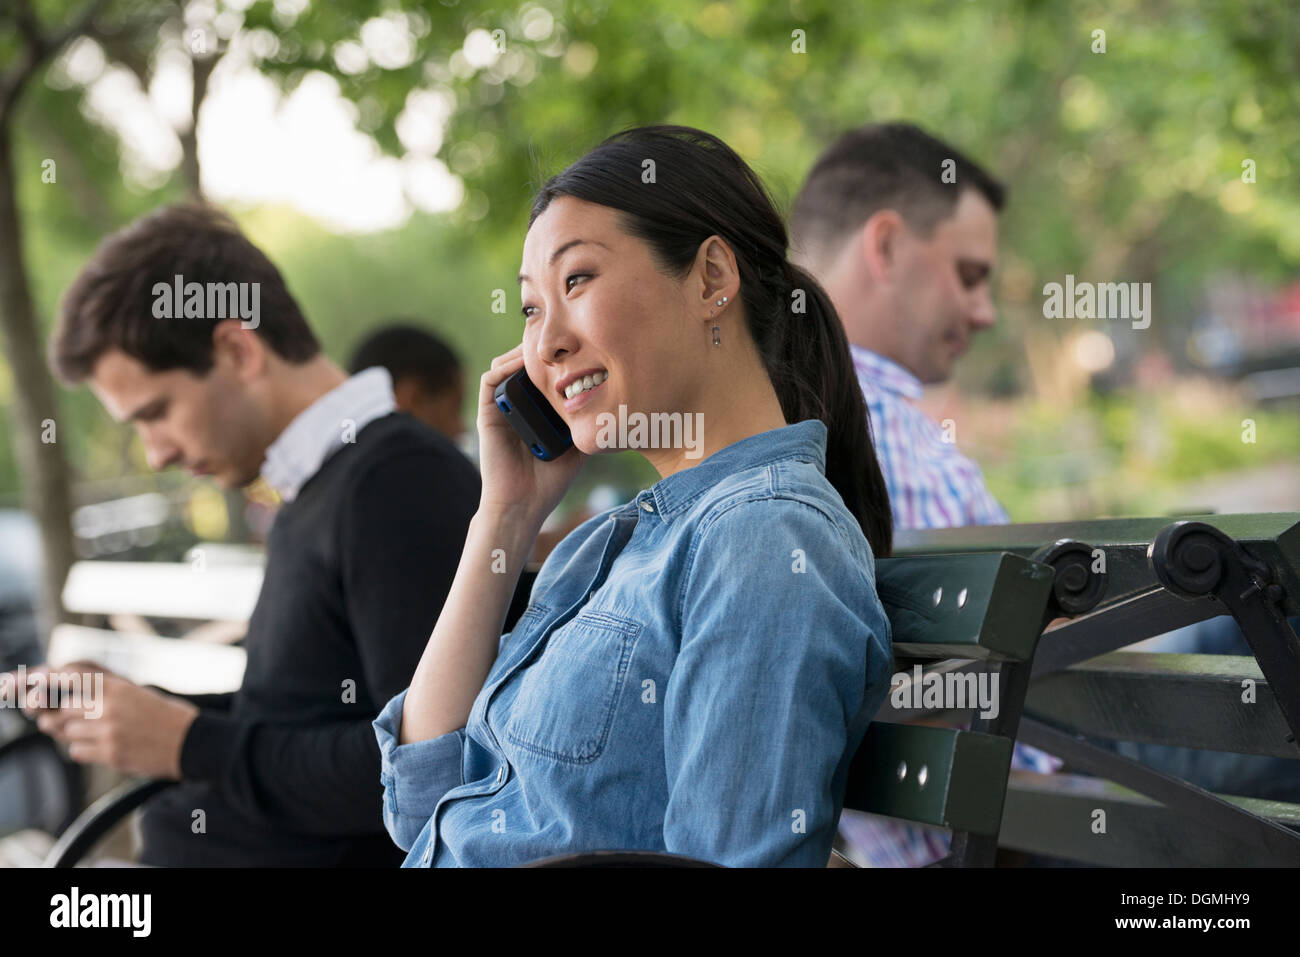 L'été dans la ville. Une femme et trois hommes assis dans le parc, chacun sur leur propre téléphone ou à l'aide d'une tablette. Banque D'Images